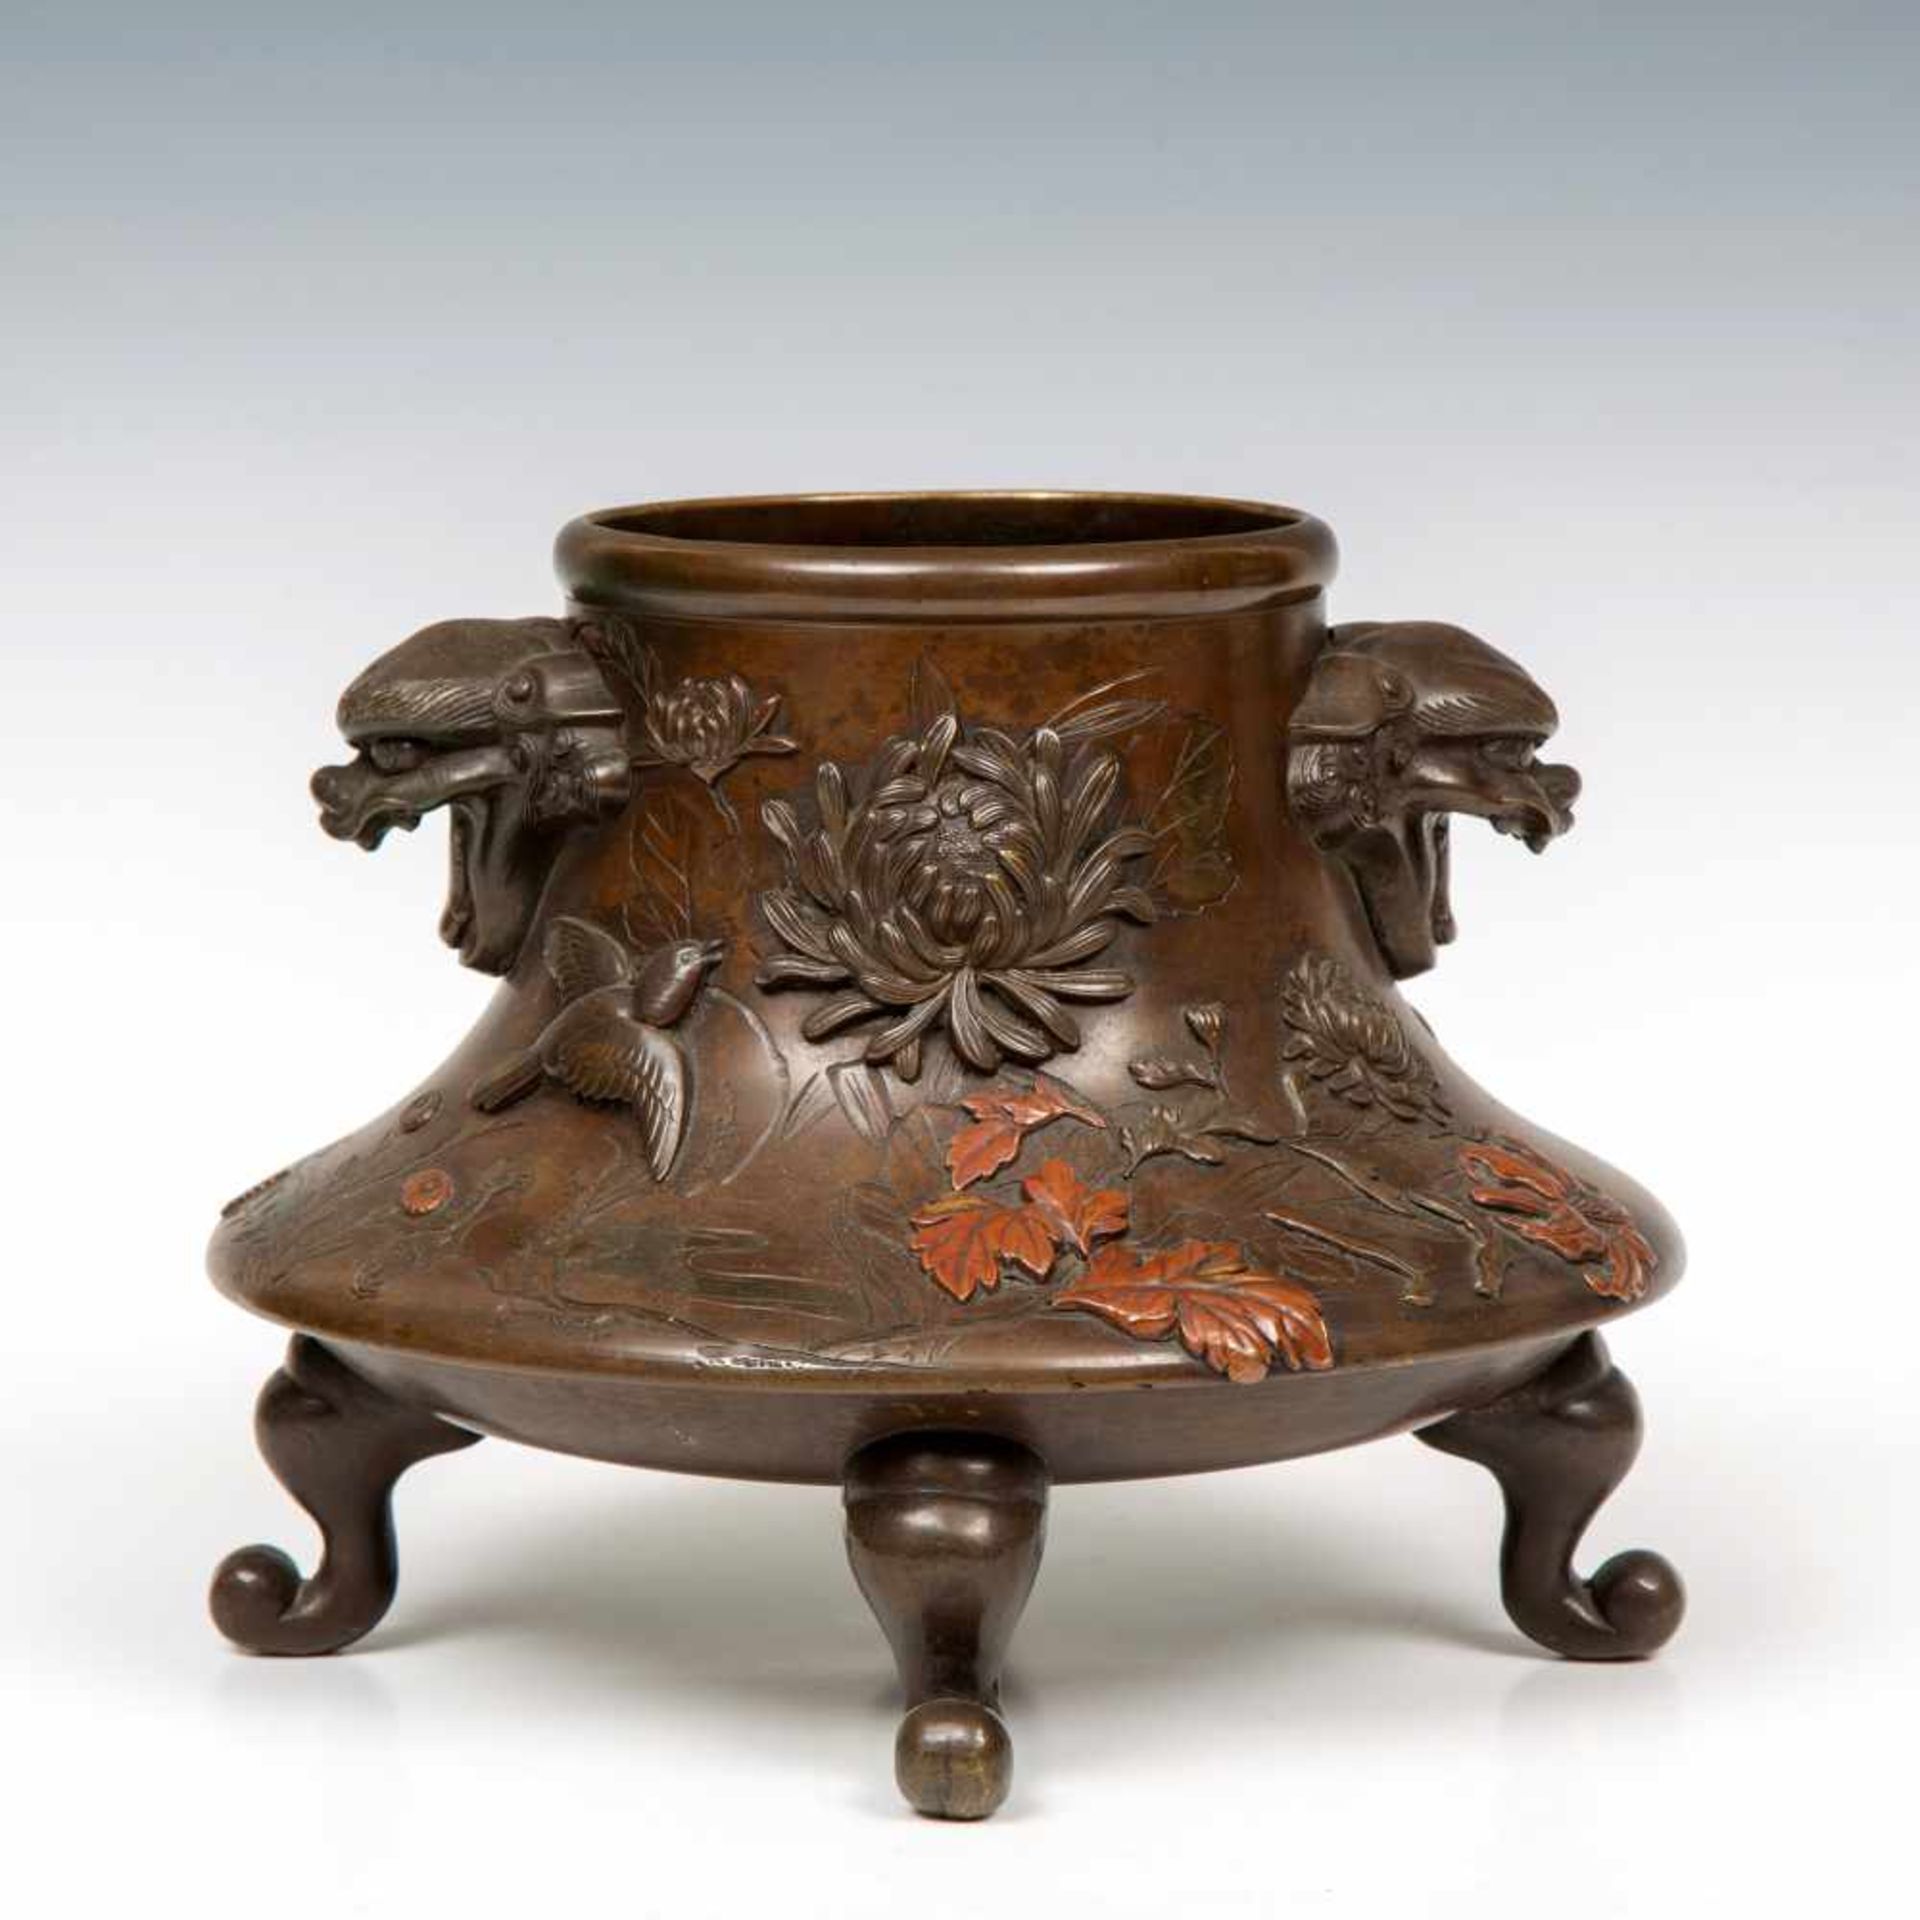 Japan, bronzen wierookvat, Meiji periode,gedecoreerd in reliëf met vogels tussen pioenrozen met twee